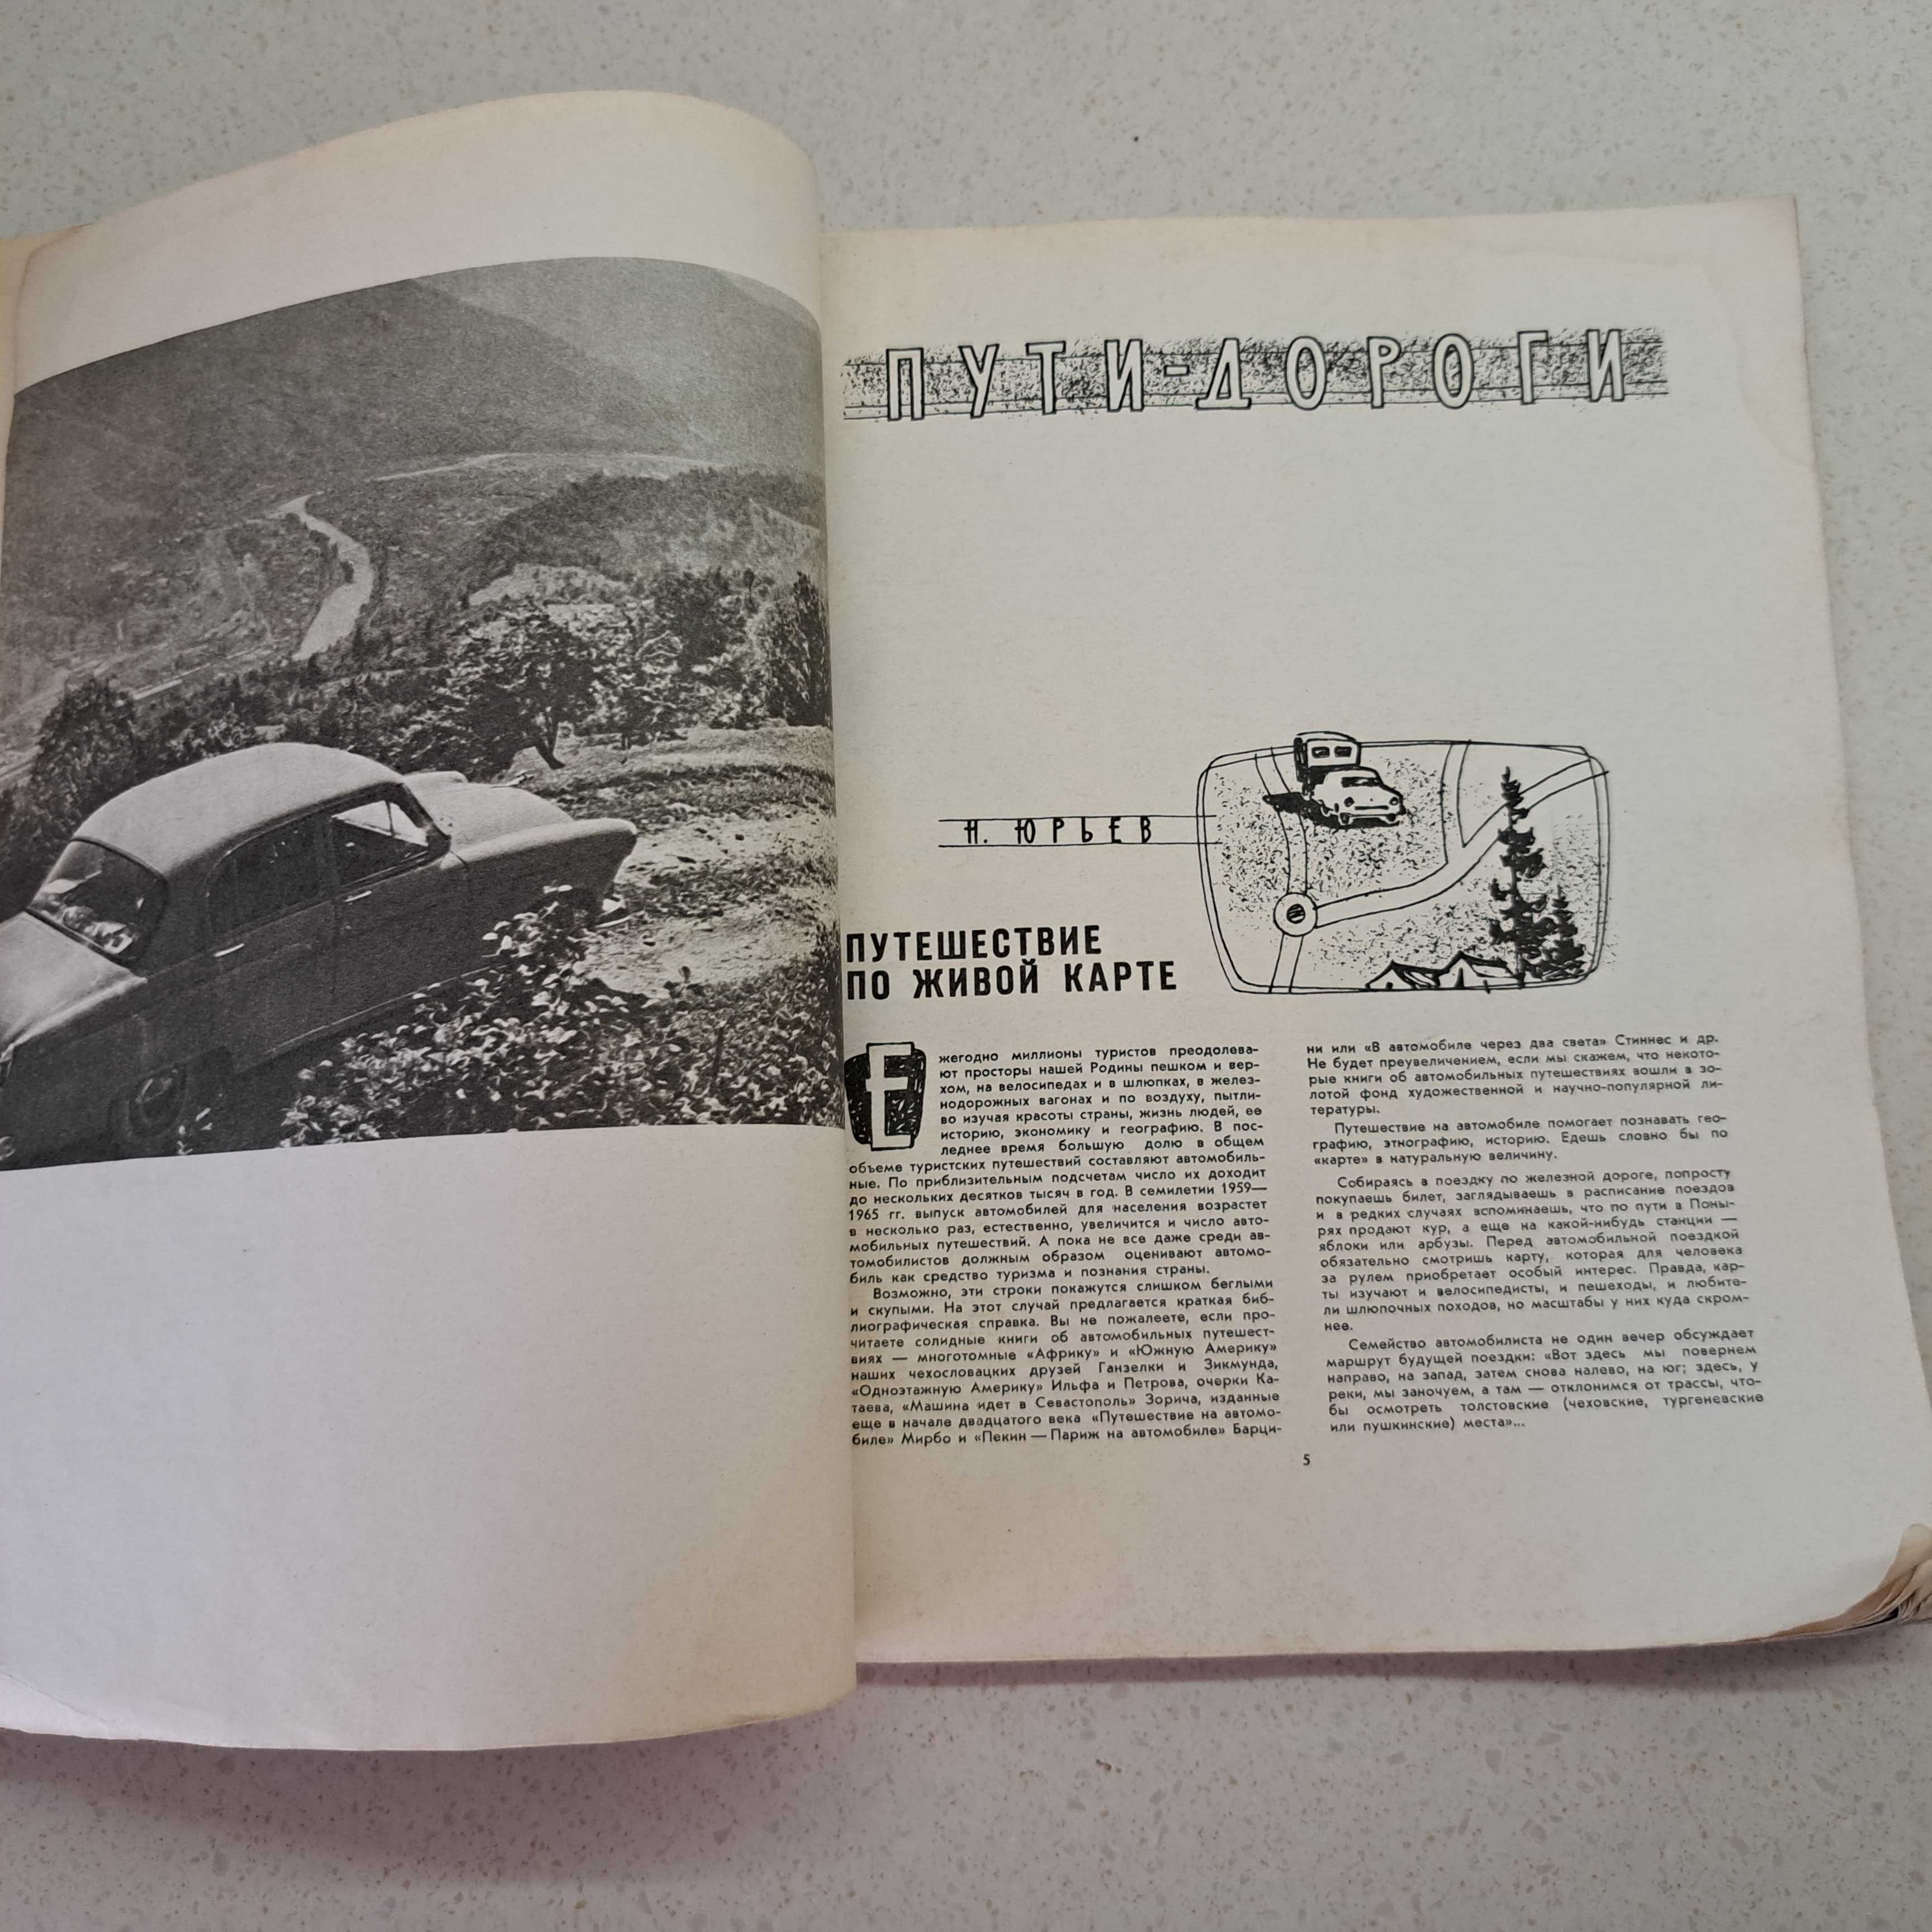 Журнал Автомобилист #1 1961г.